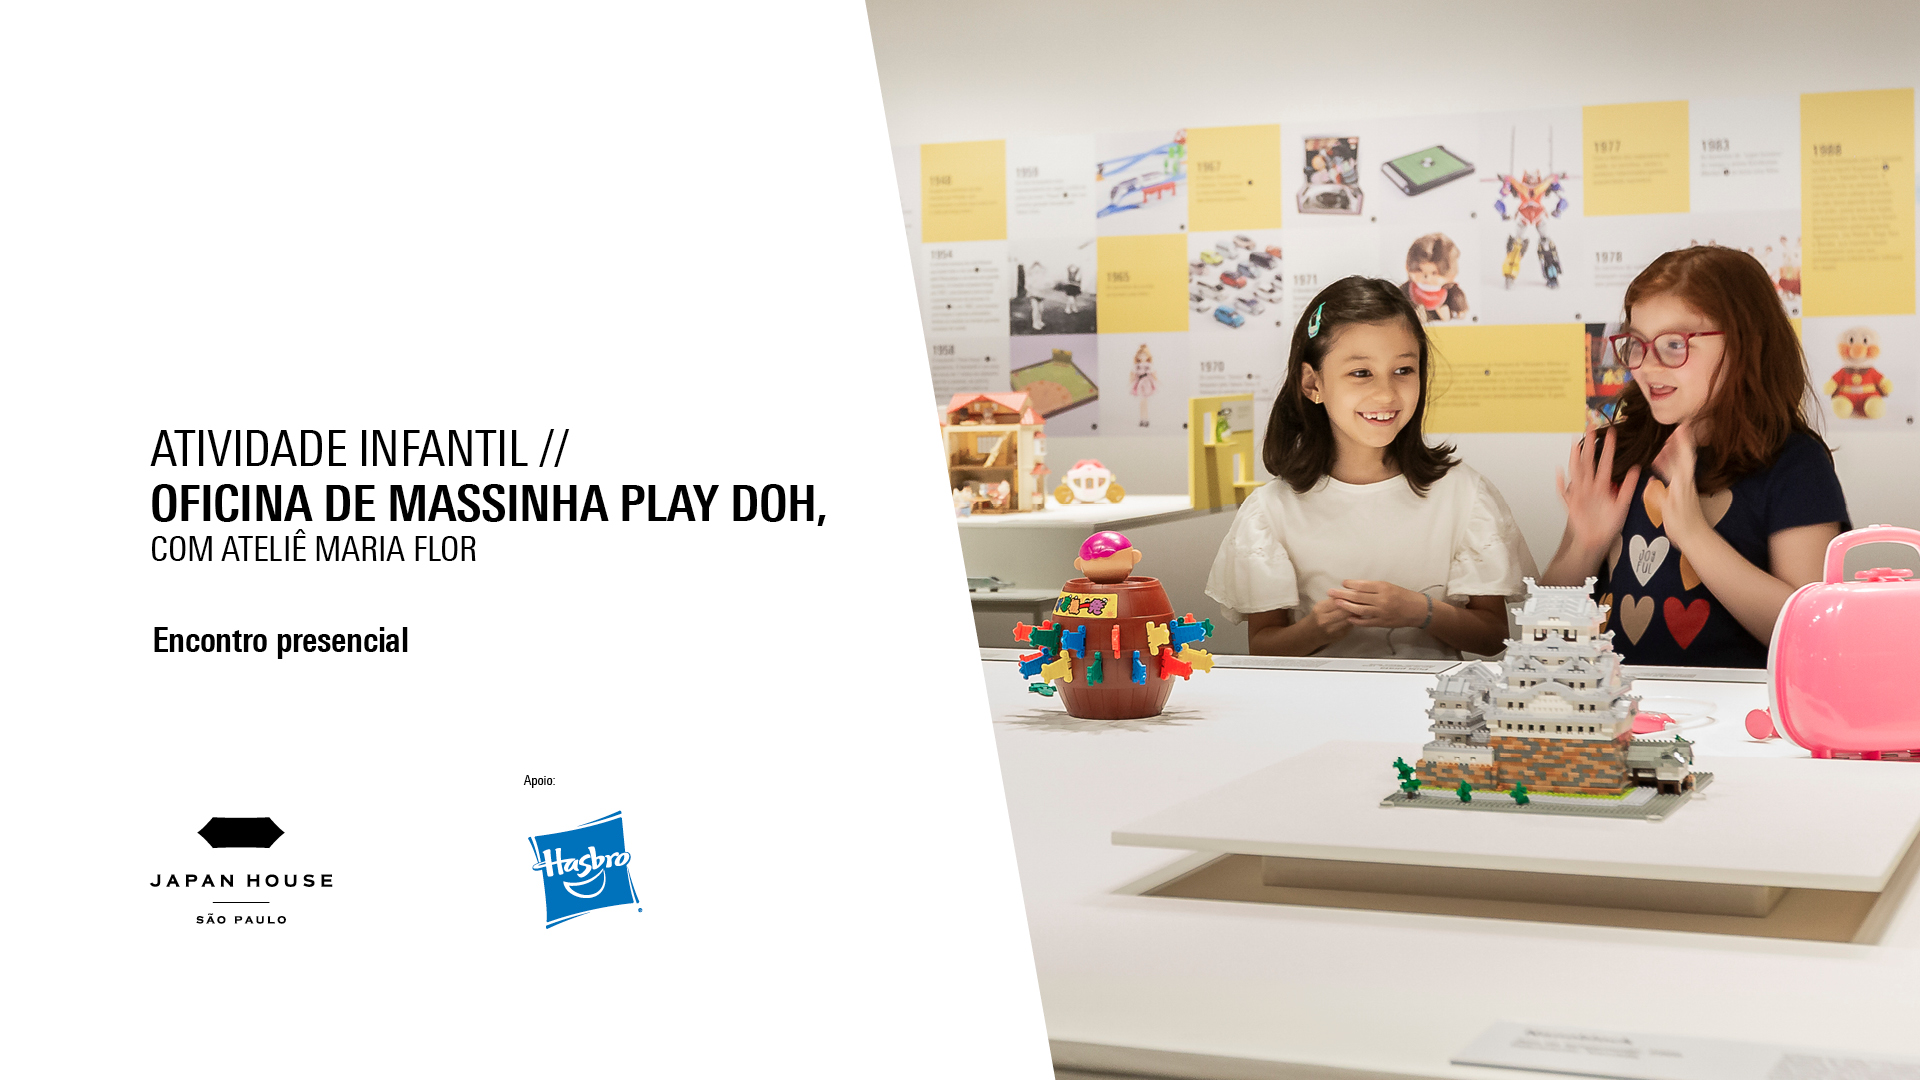 Banner informativo. Atividade infantil // Oficina de Massinha Play Doh, com Ateliê Maria Flor. Eventos presenciais.